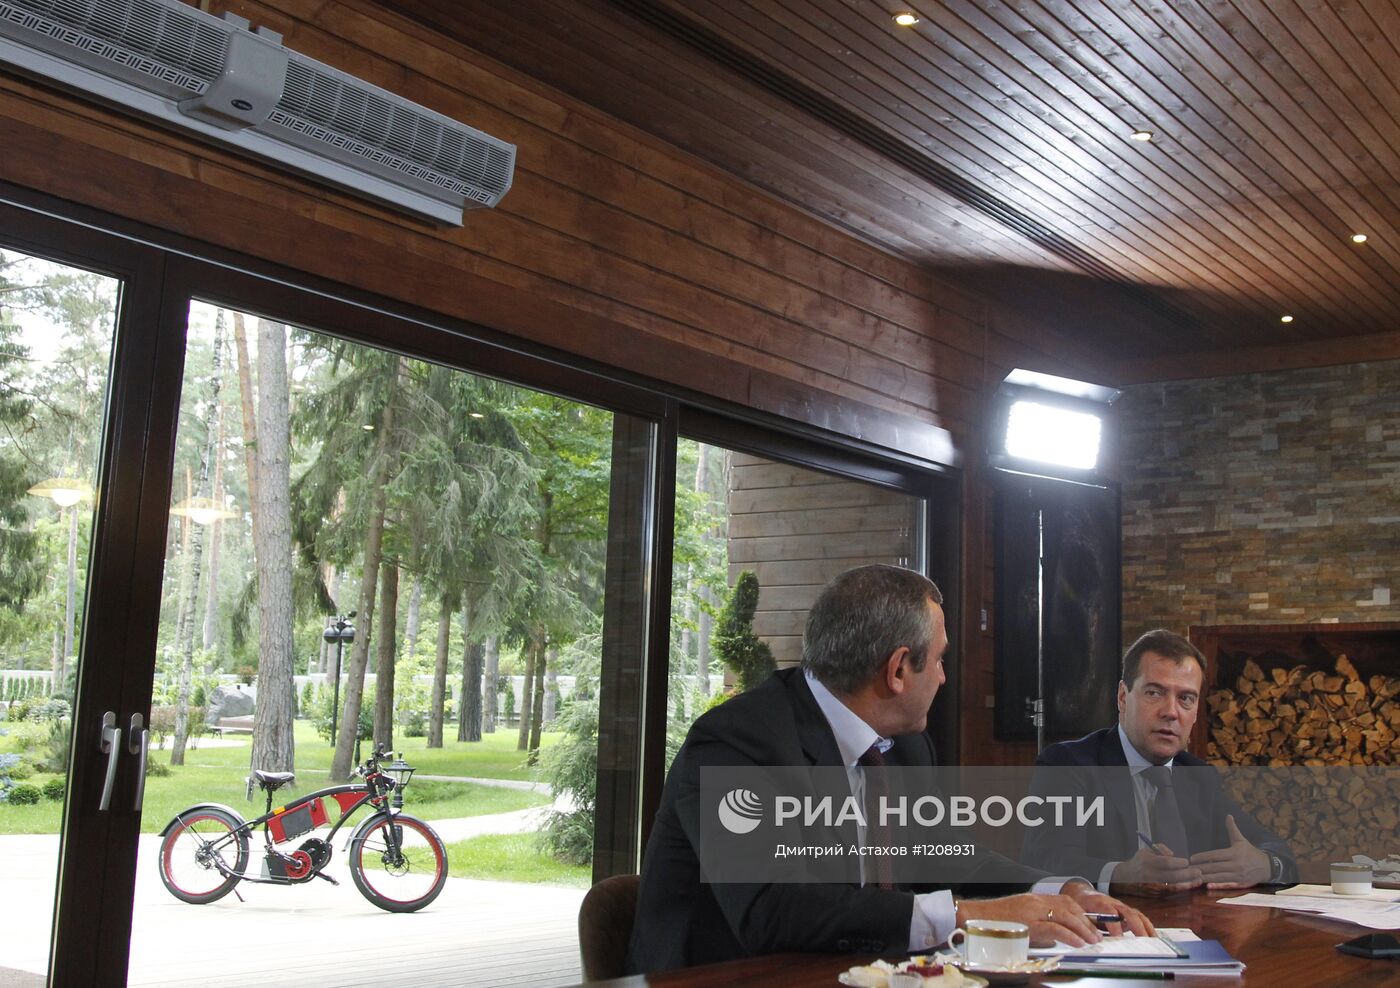 Встреча Д.Медведева с представителями партии "Единая Россия"